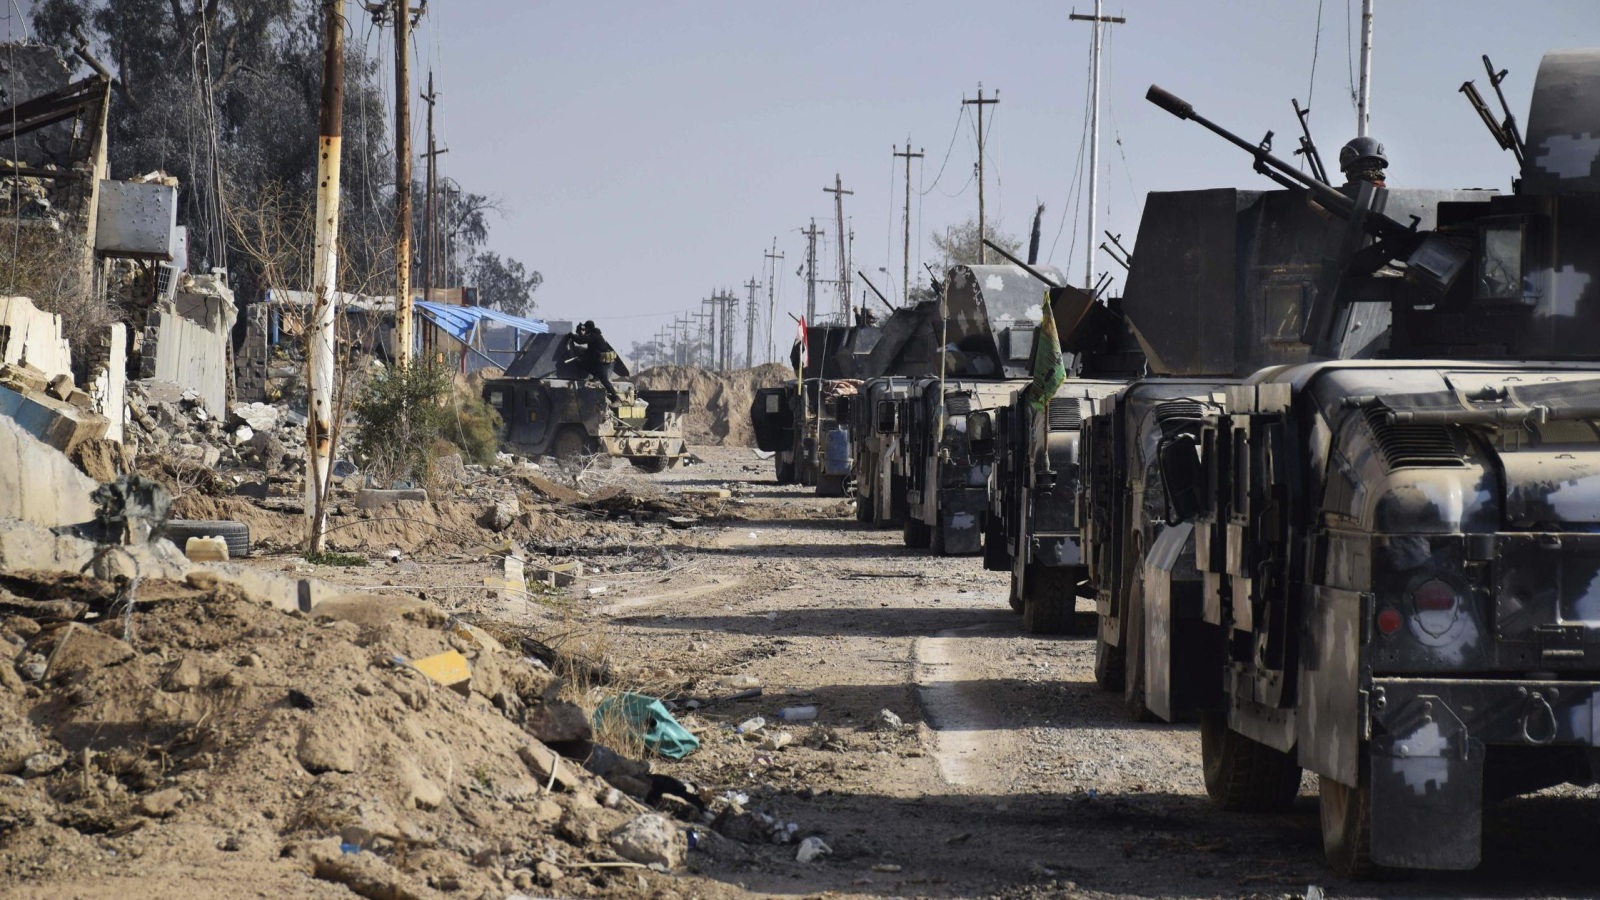 ‪قوات من الجيش العراقي قرب المجمع الحكومي بمدينة الرمادي‬ قوات من الجيش العراقي قرب المجمع الحكومي بمدينة الرمادي (أسوشيتد برس)